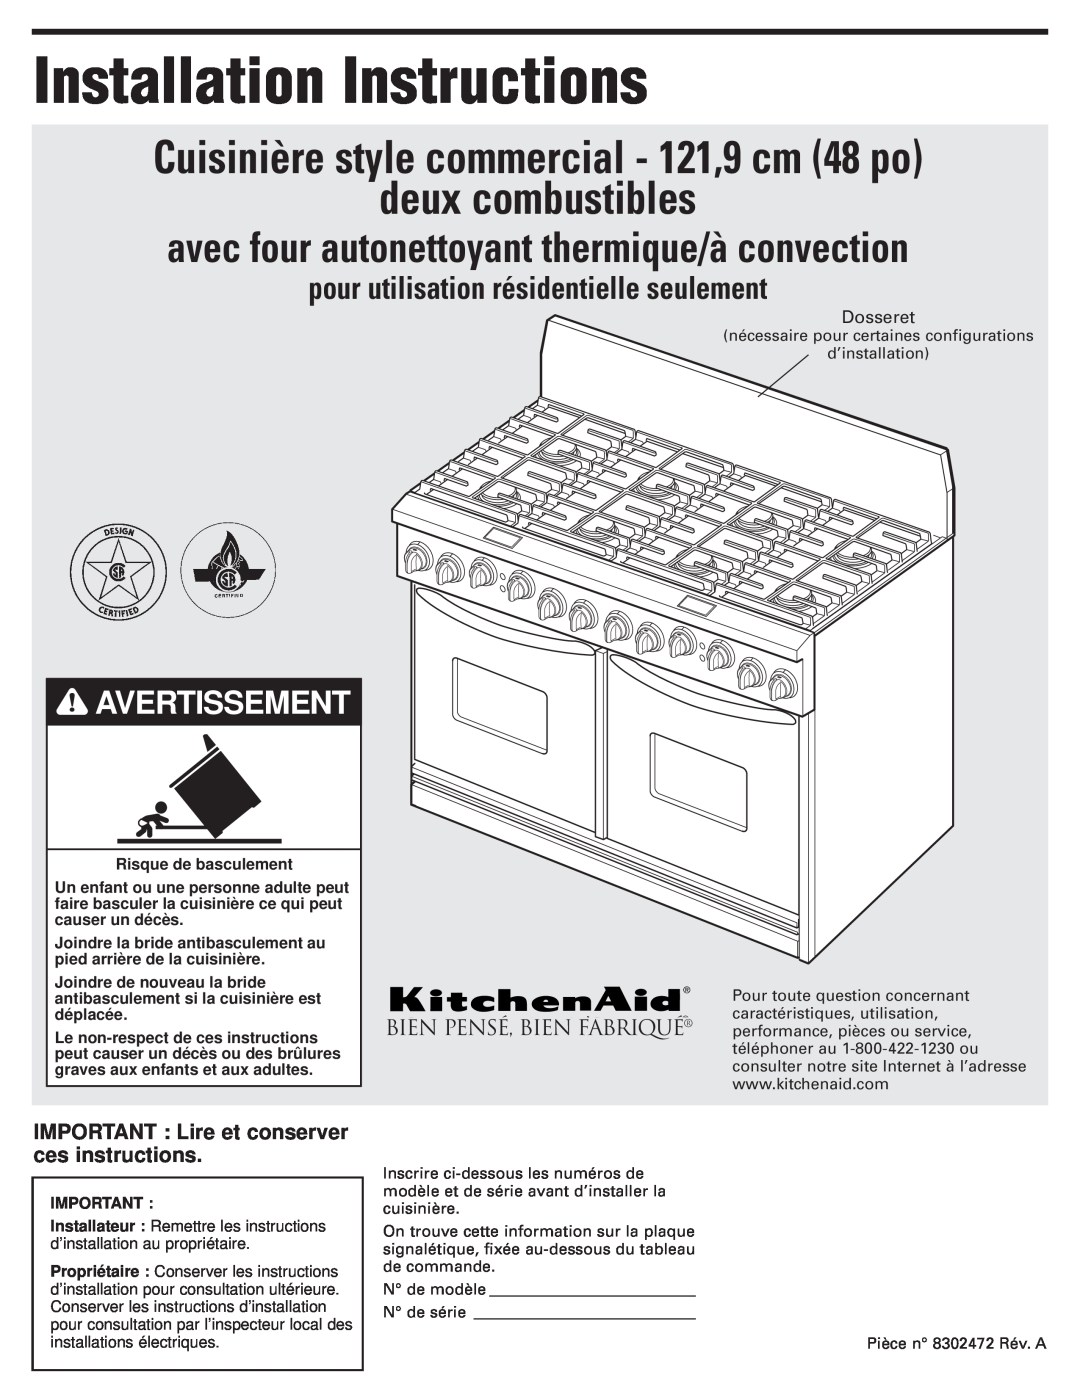 KitchenAid 8302472A avec four autonettoyant thermique/à convection, Avertissement, Installation Instructions, Dosseret 